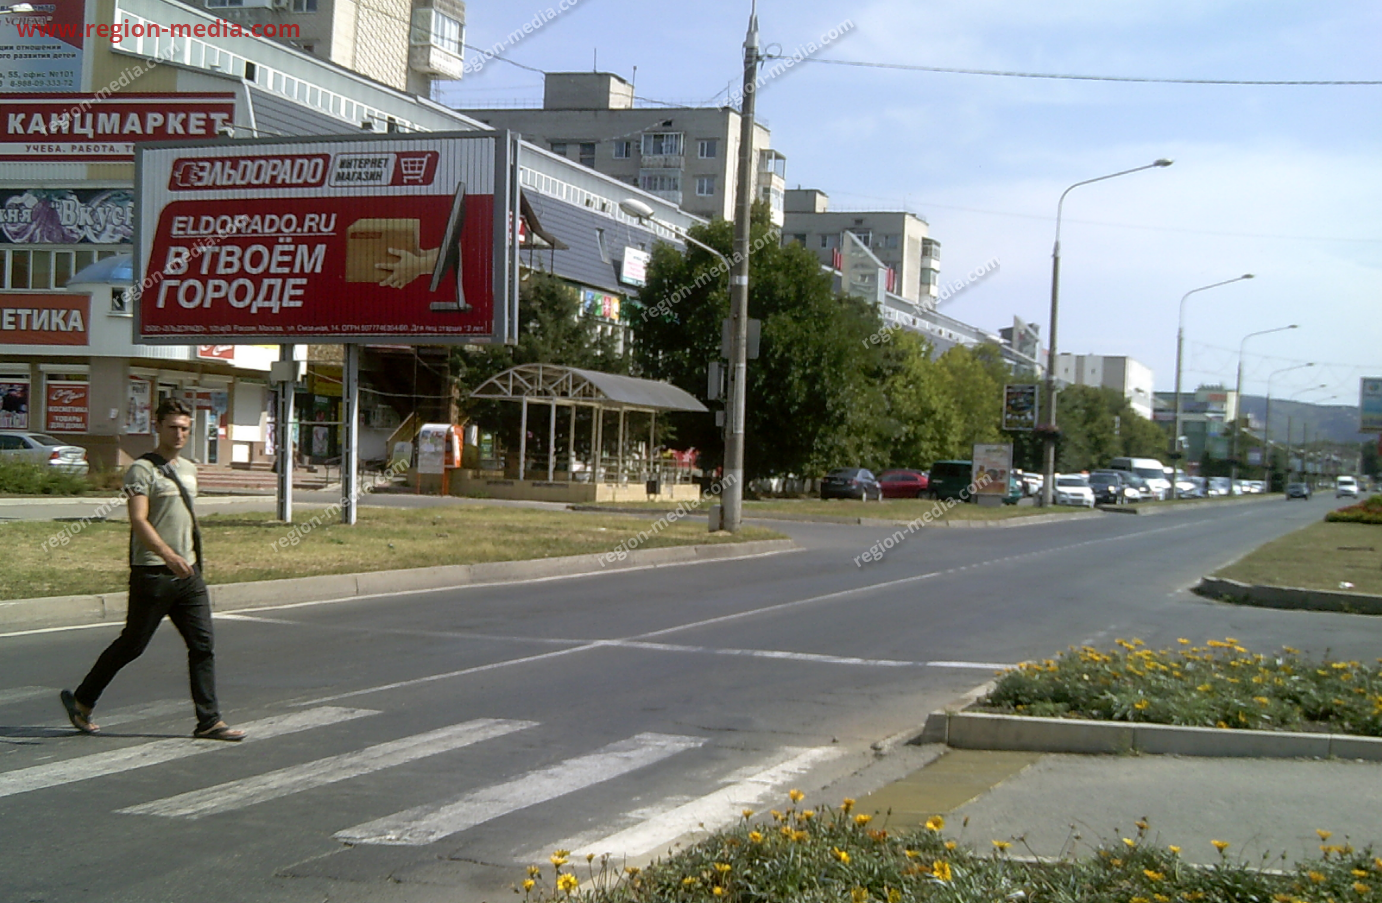 Размещение рекламы компании "Эльдорадо" на щитах 3х6 в городе Невинномысск